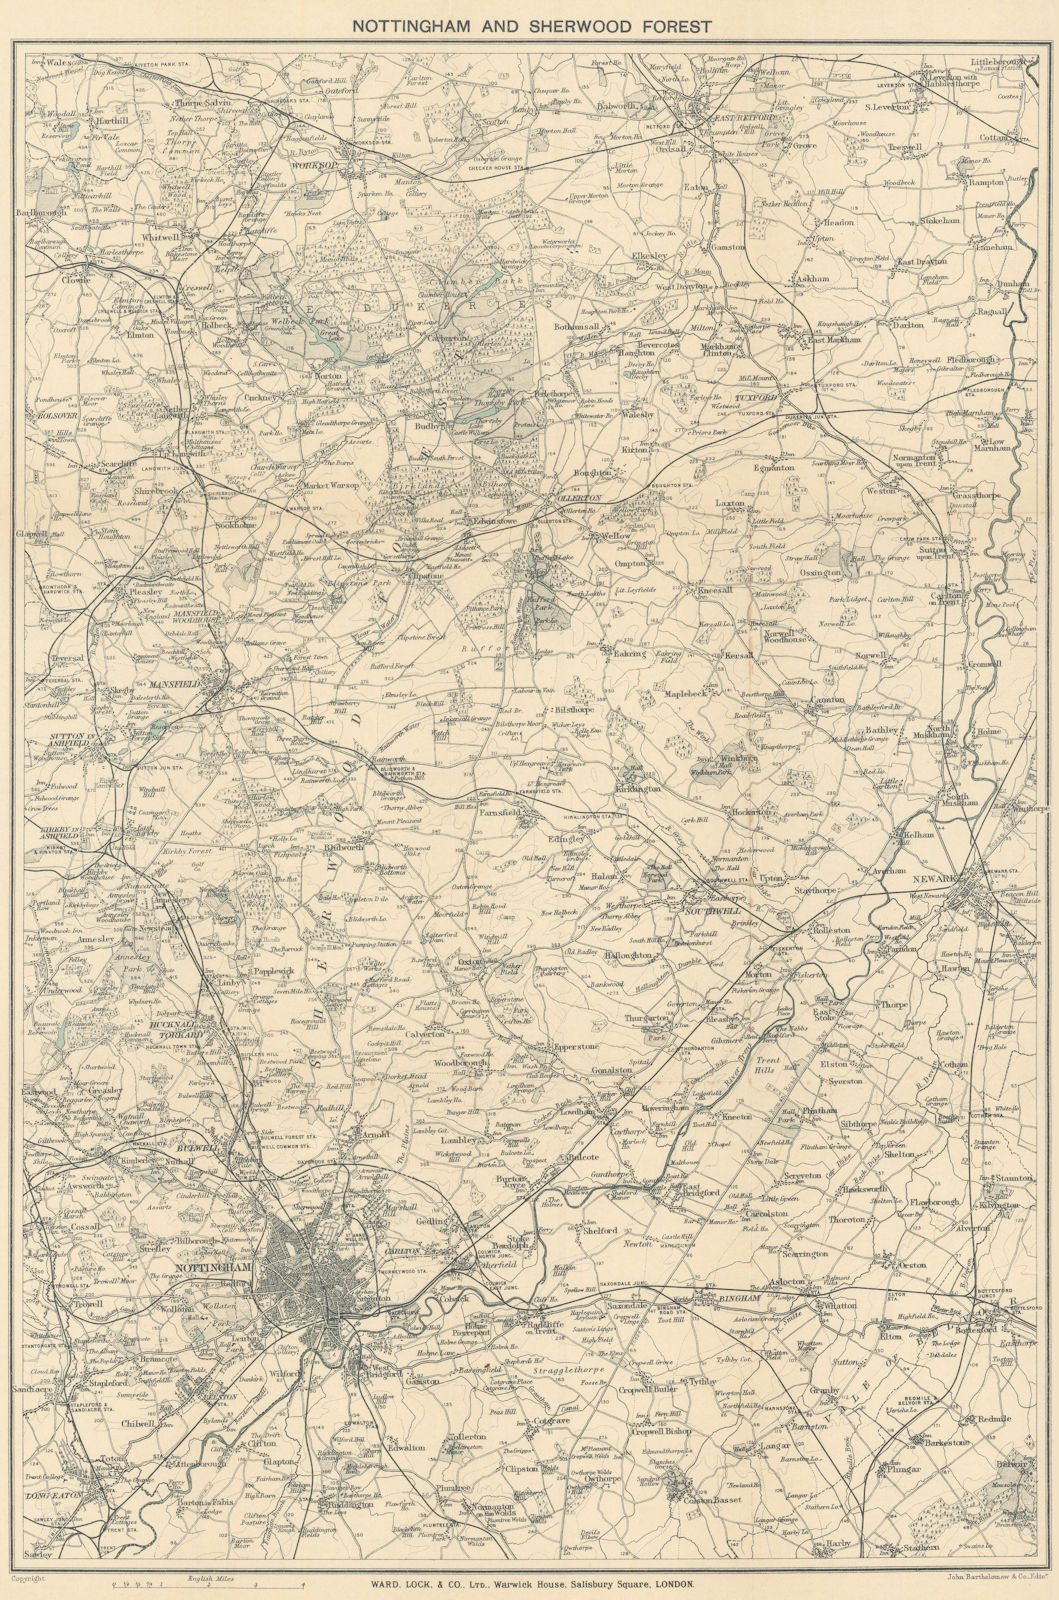 NOTTINGHAM & SHERWOOD FOREST. Dukeries Worksop Mansfield. WARD LOCK 1925 map